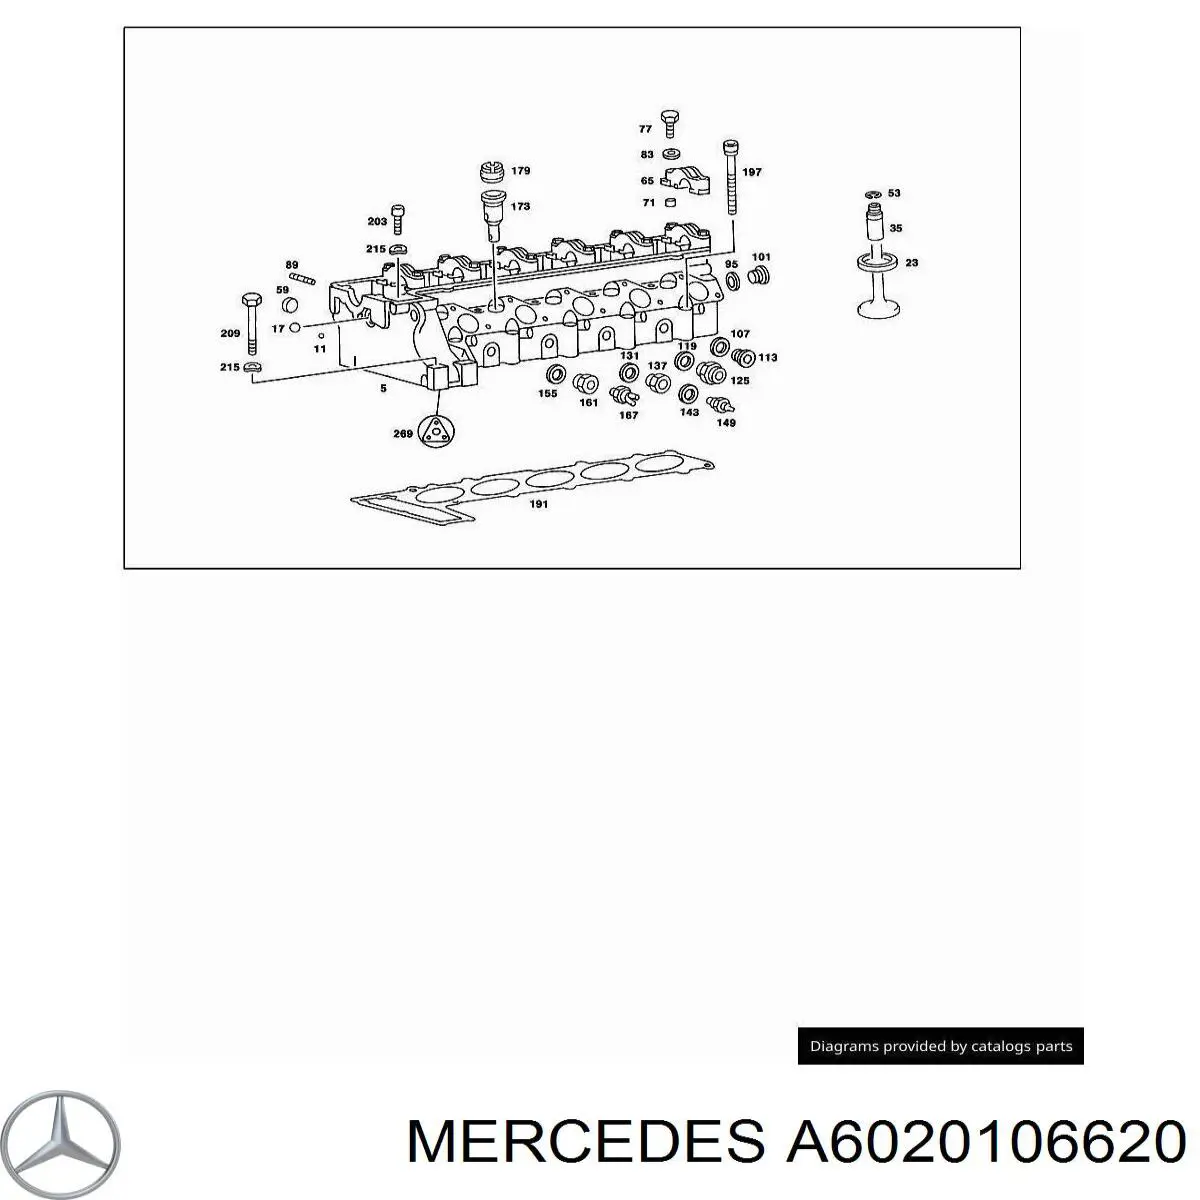 A6020106620 Mercedes комплект прокладок двигателя верхний